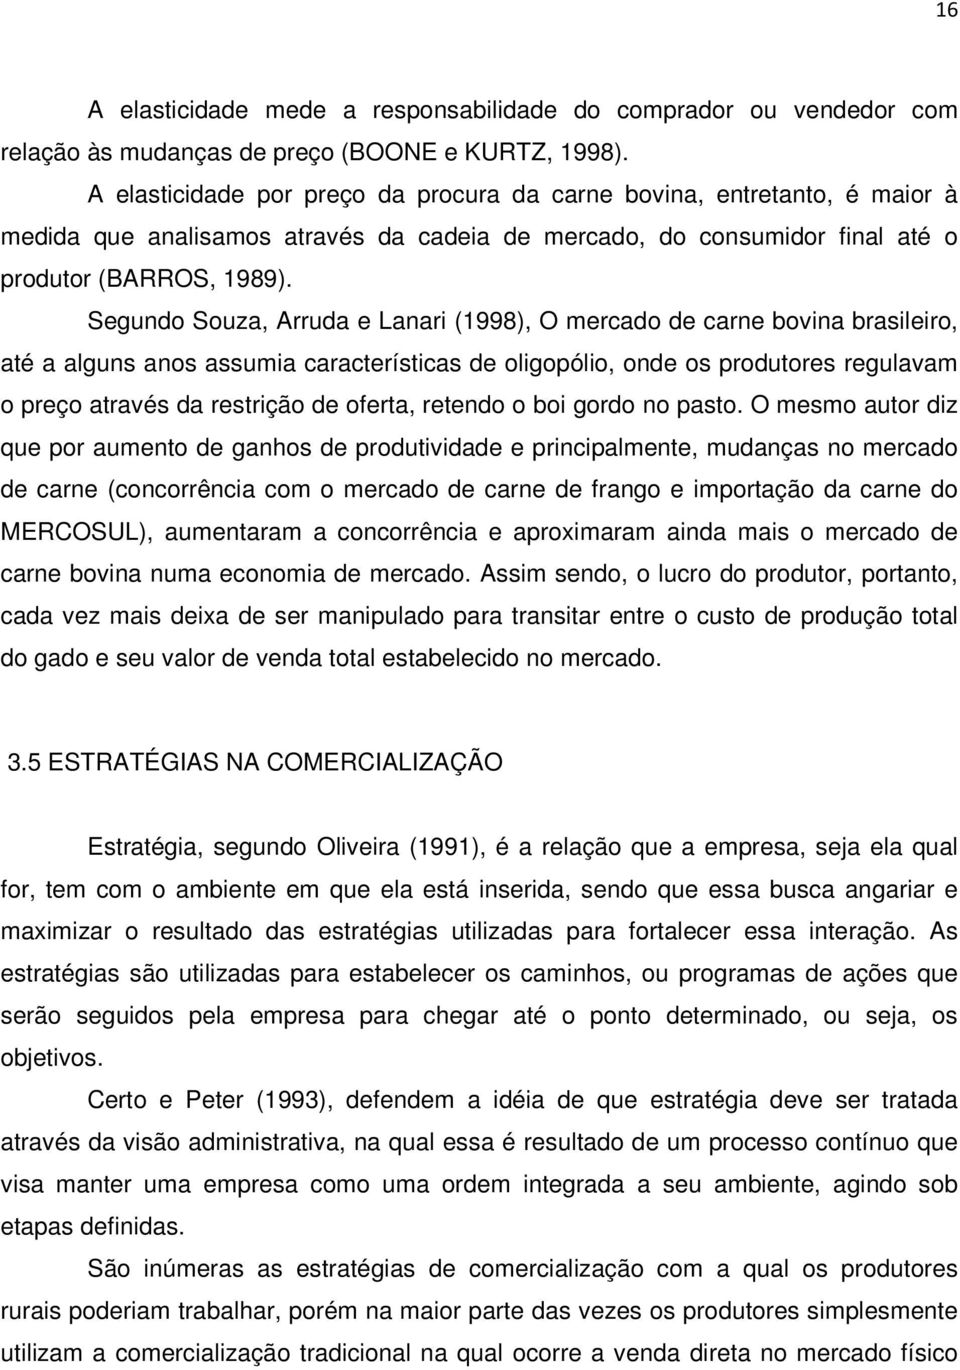 Segundo Souza, Arruda e Lanari (1998), O mercado de carne bovina brasileiro, até a alguns anos assumia características de oligopólio, onde os produtores regulavam o preço através da restrição de